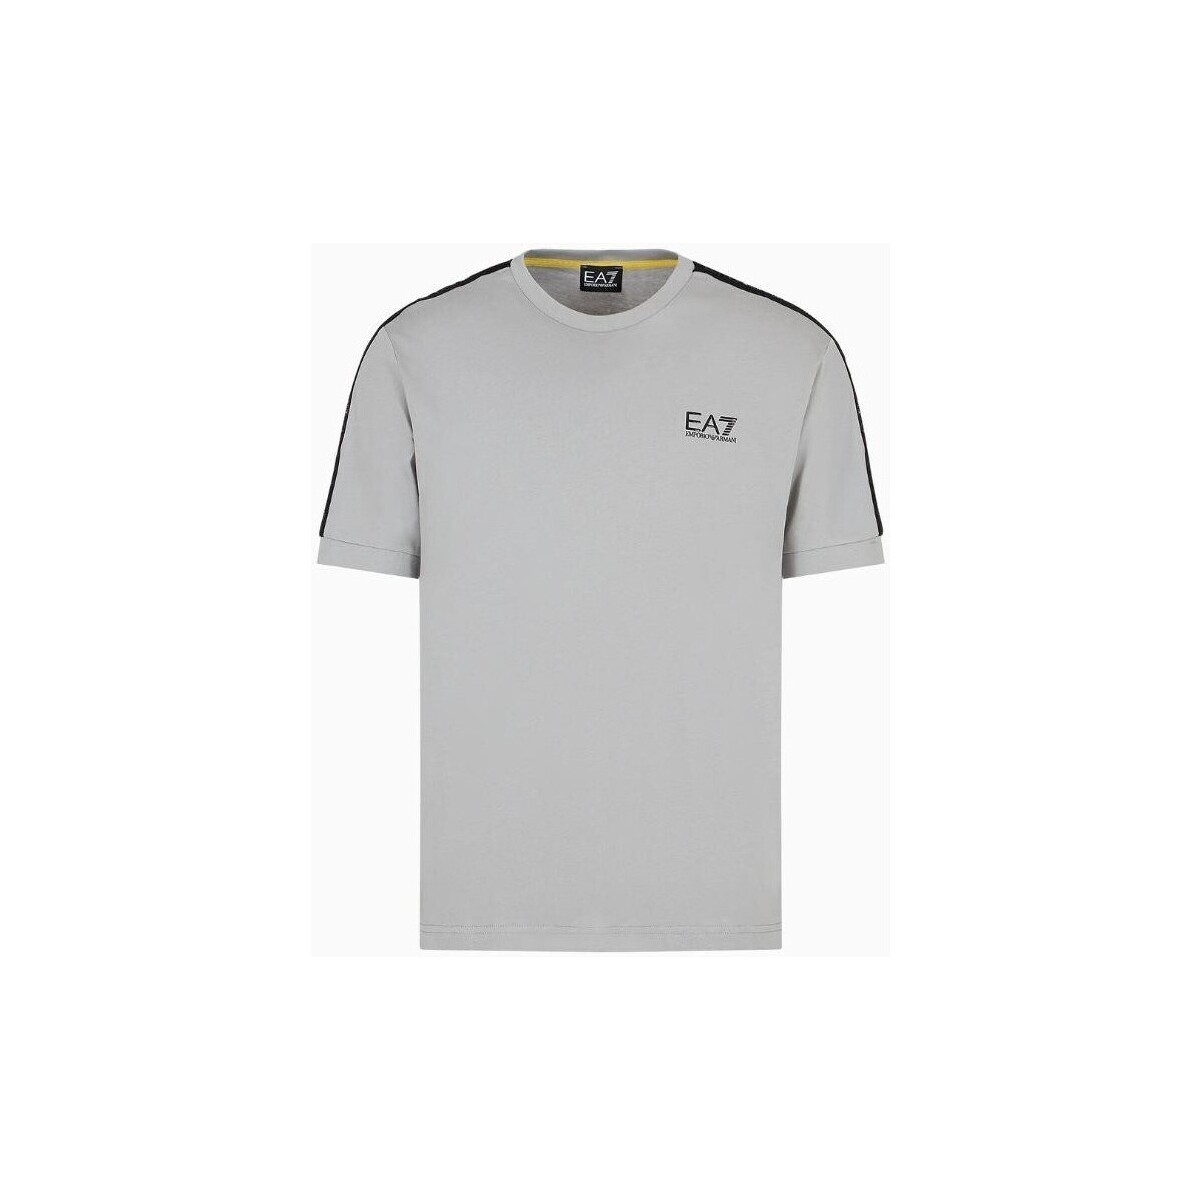 Oblačila Moški Majice s kratkimi rokavi Emporio Armani EA7 3DPT35 PJ02Z Siva